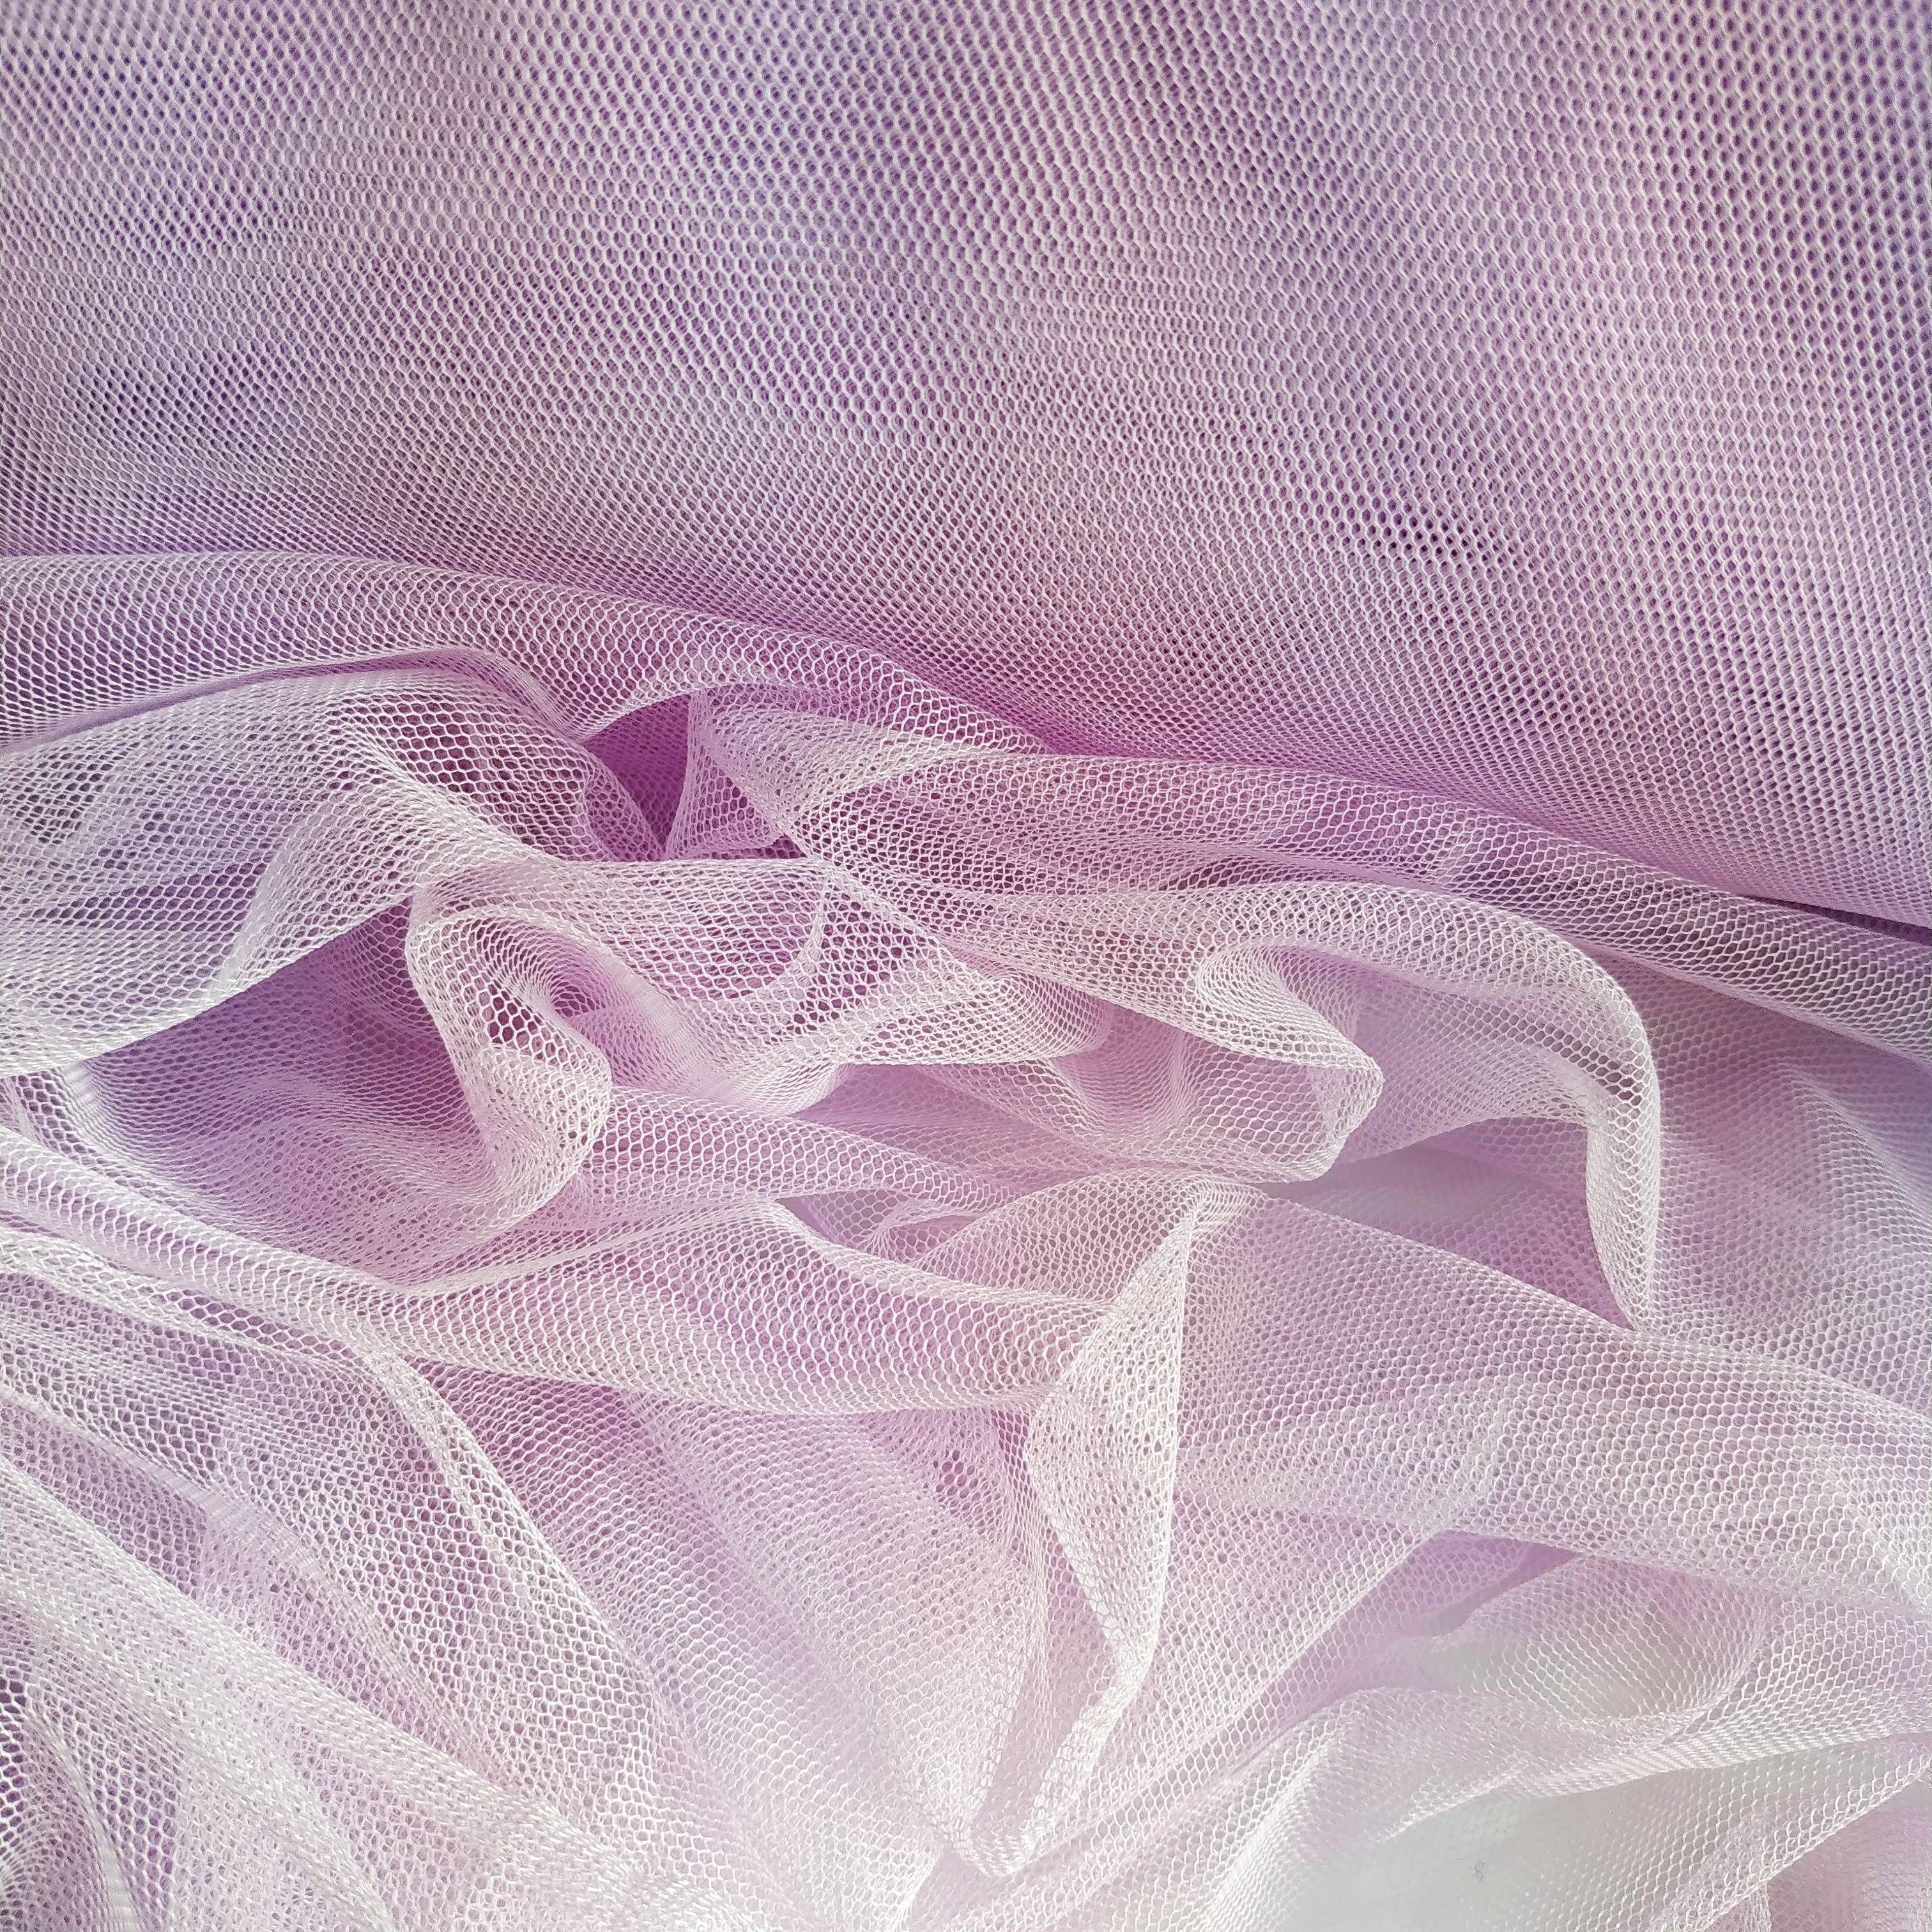 Обзор невесомой ткани фатин: от свойств до правил ухода